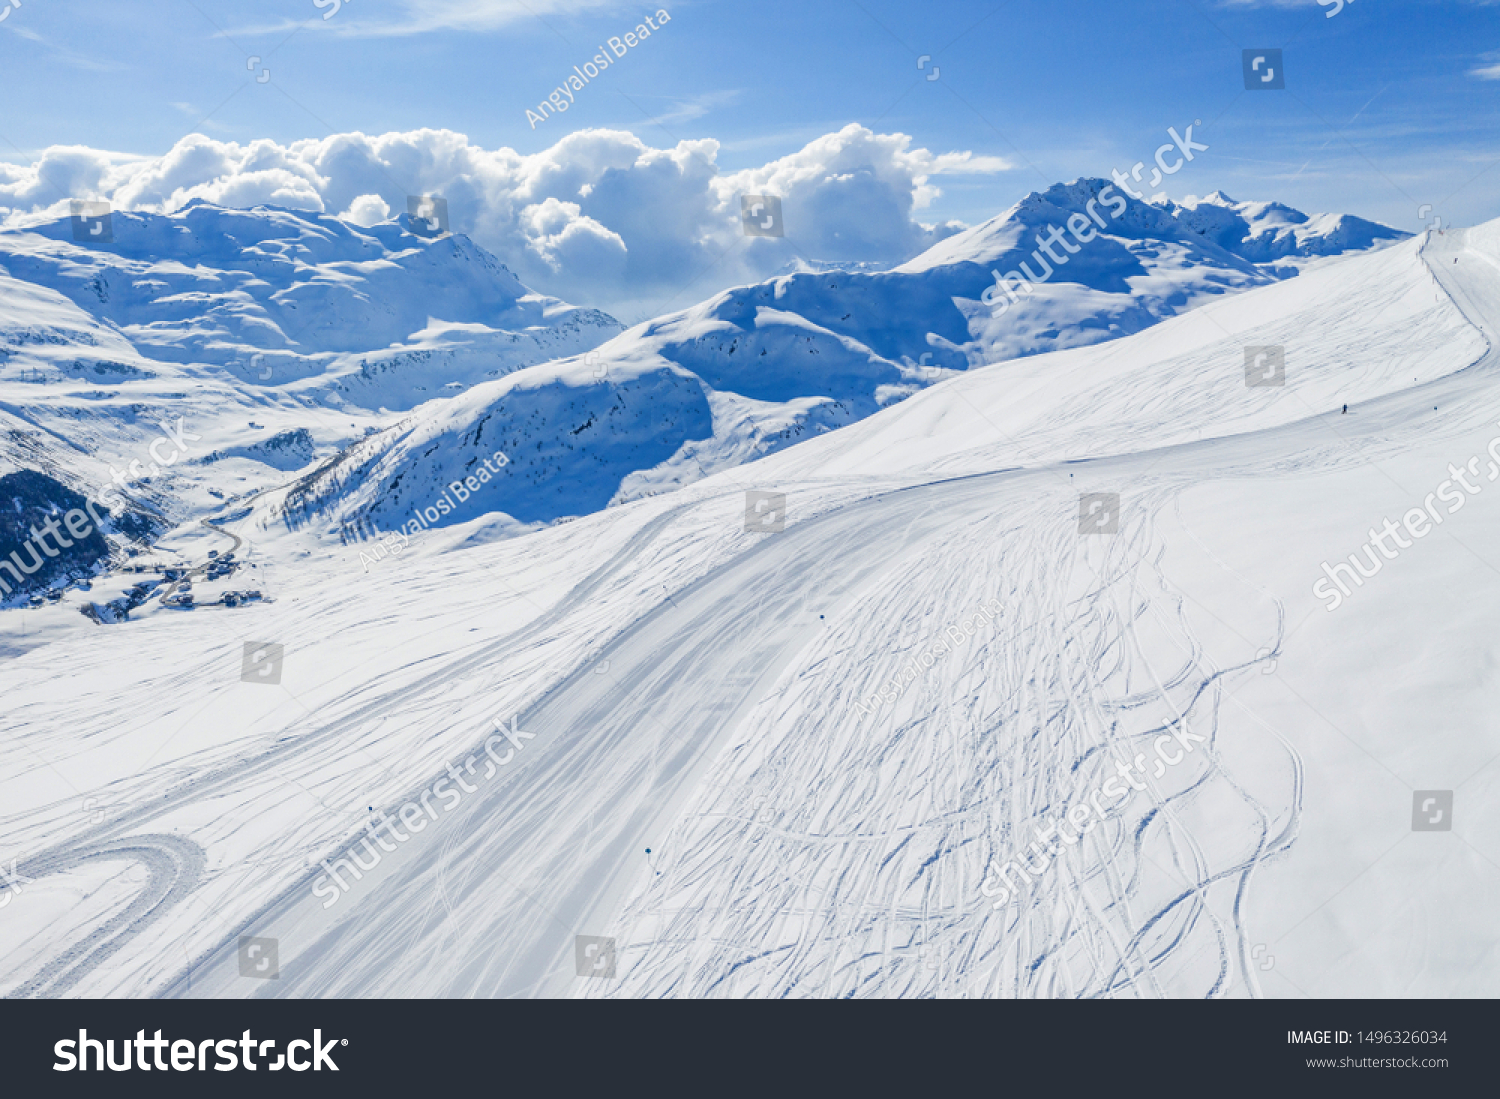 Drone view of mountain ski slopes. #1496326034